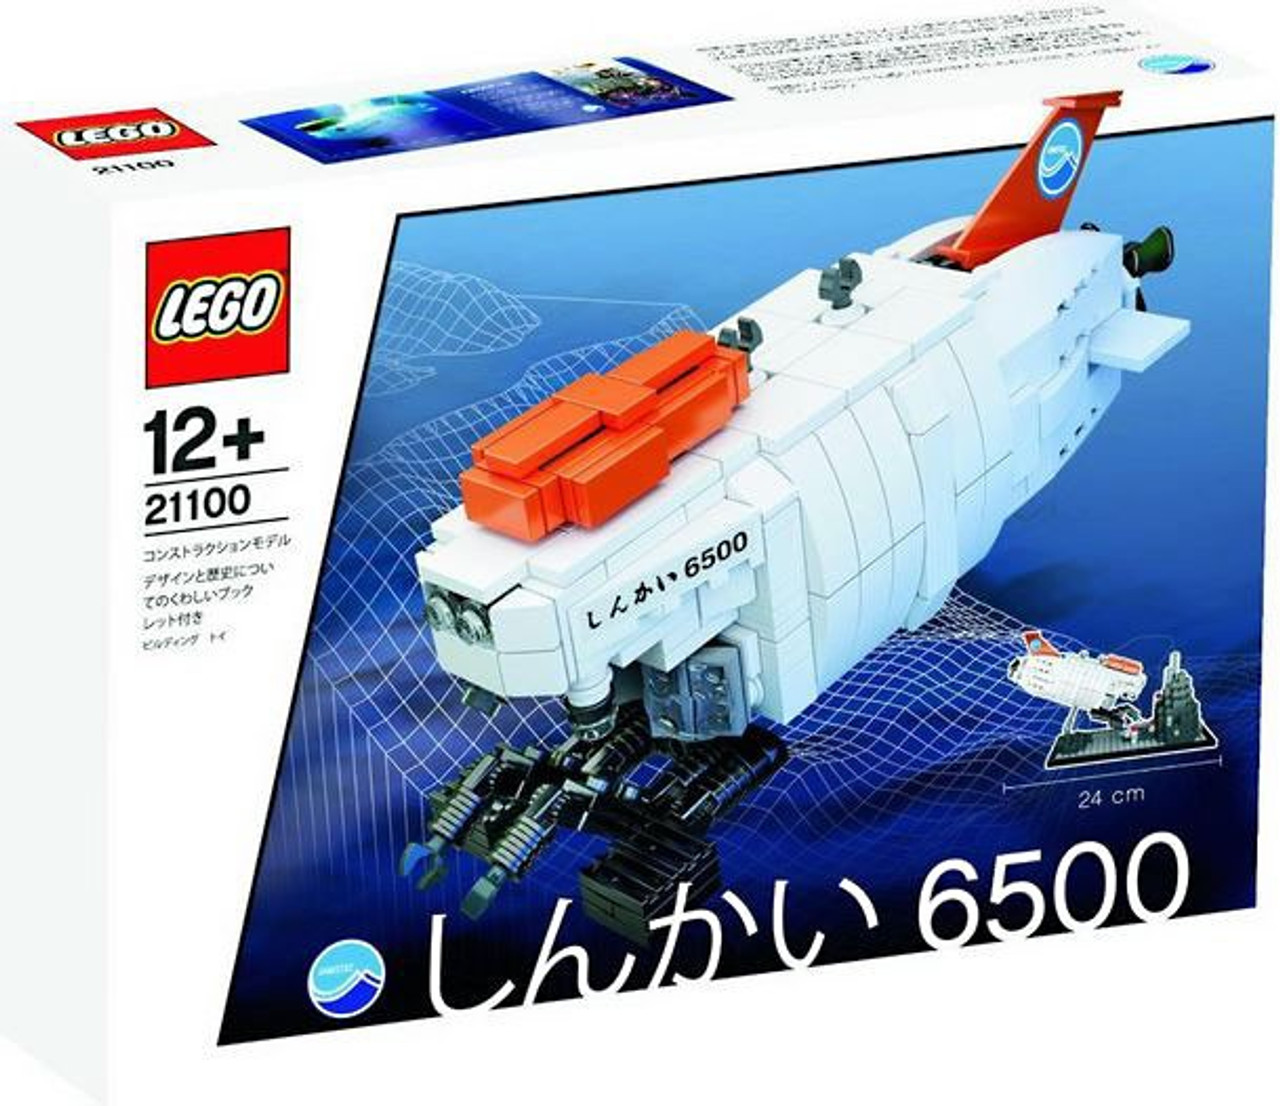 LEGO Shinkai 6500 Submarine Set 21100 - ToyWiz